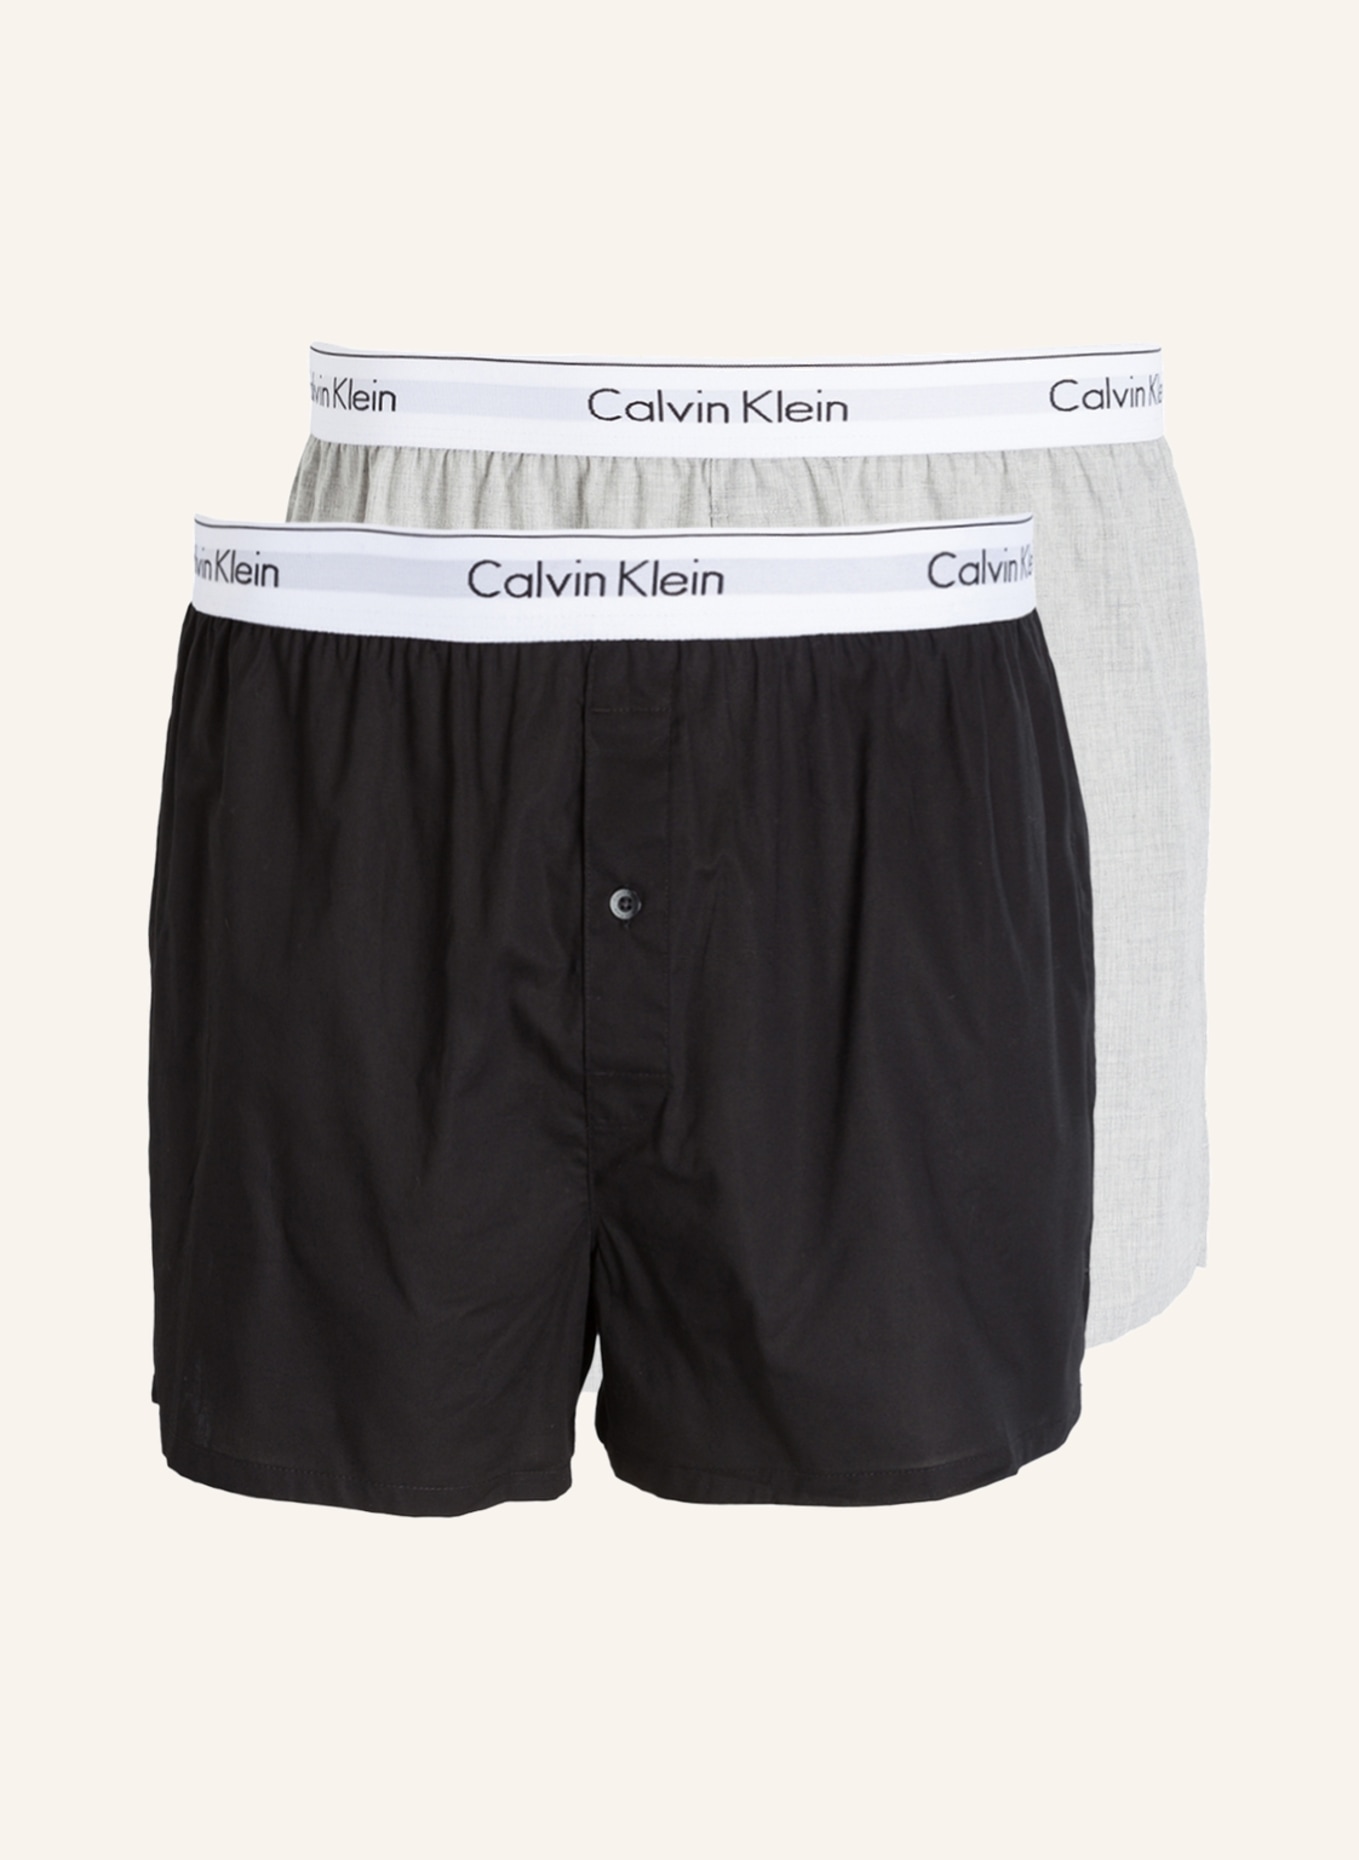 Calvin Klein 2er-Pack Web-Boxershorts MODERN COTTON STRETCH, Farbe: HELLGRAU/ SCHWARZ (Bild 1)